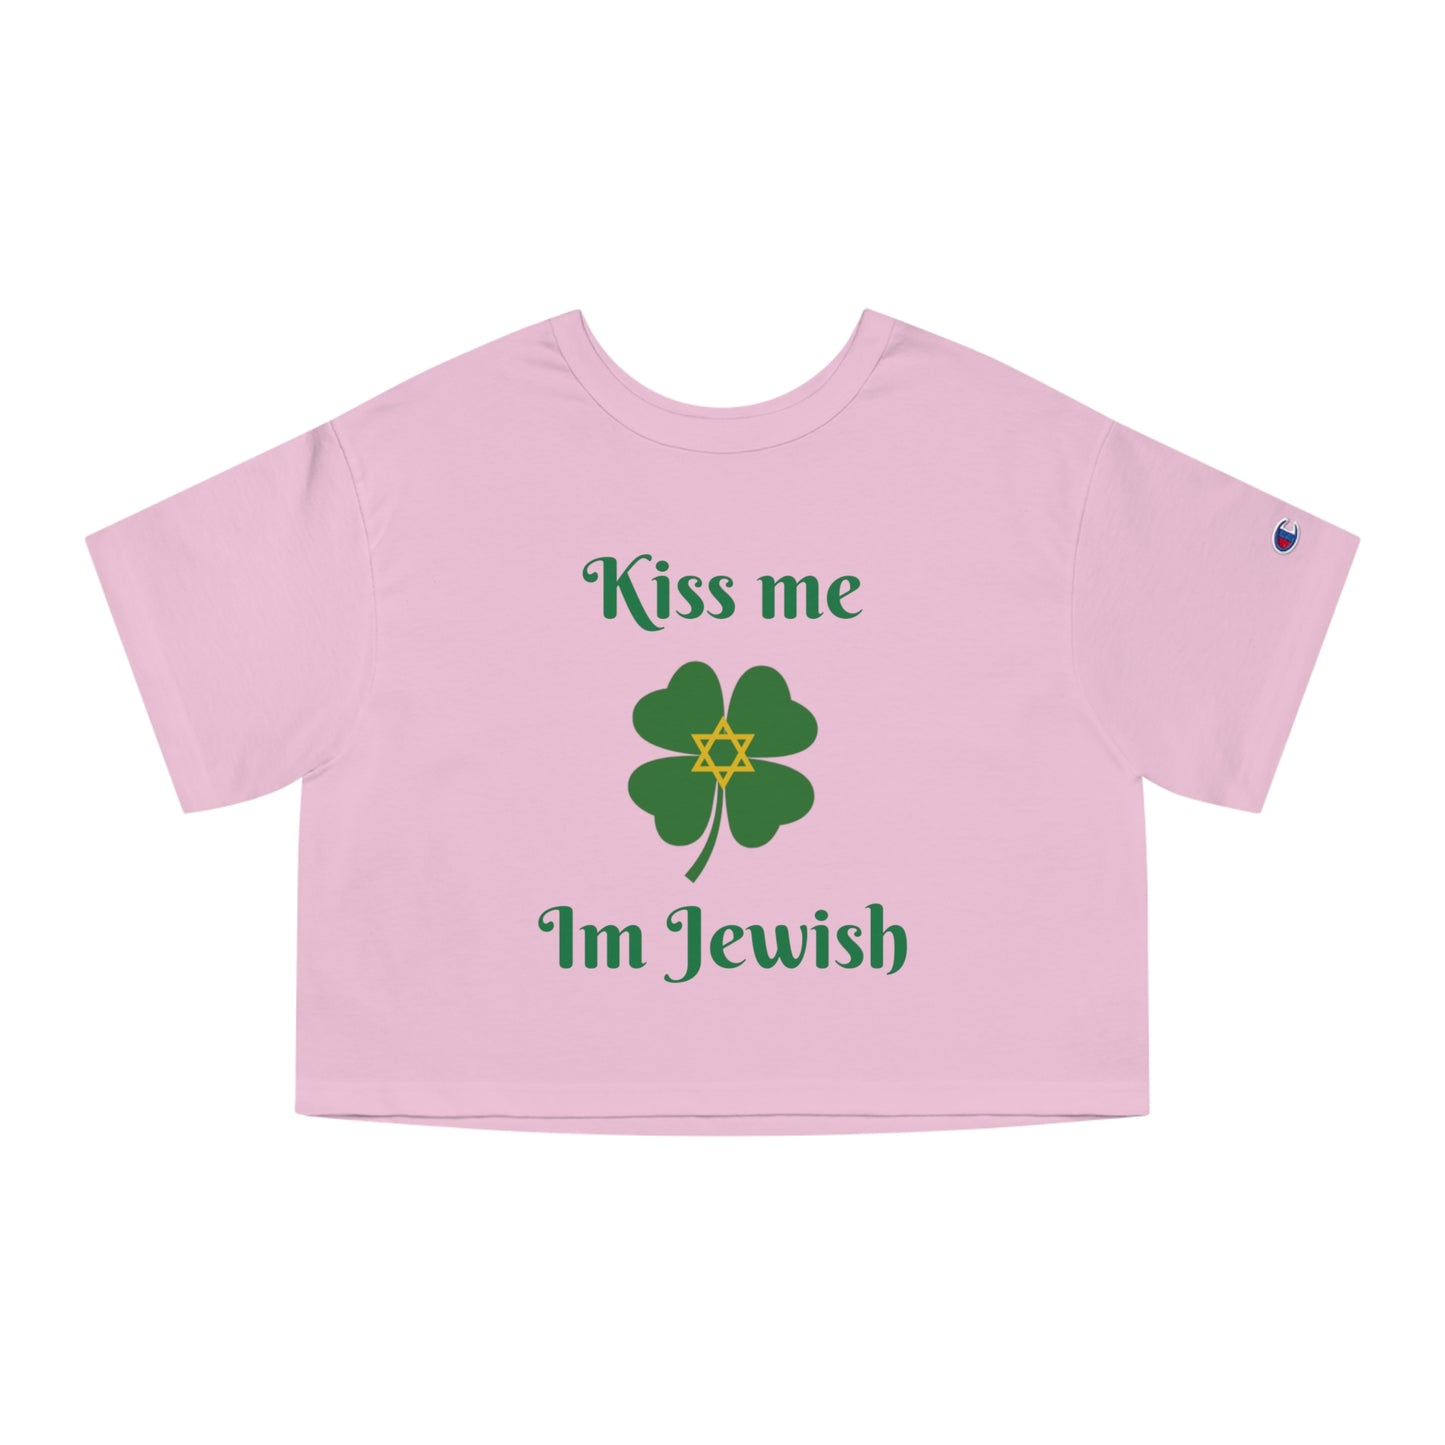 "Kiss me I'm Jewish" - Champion Crop top